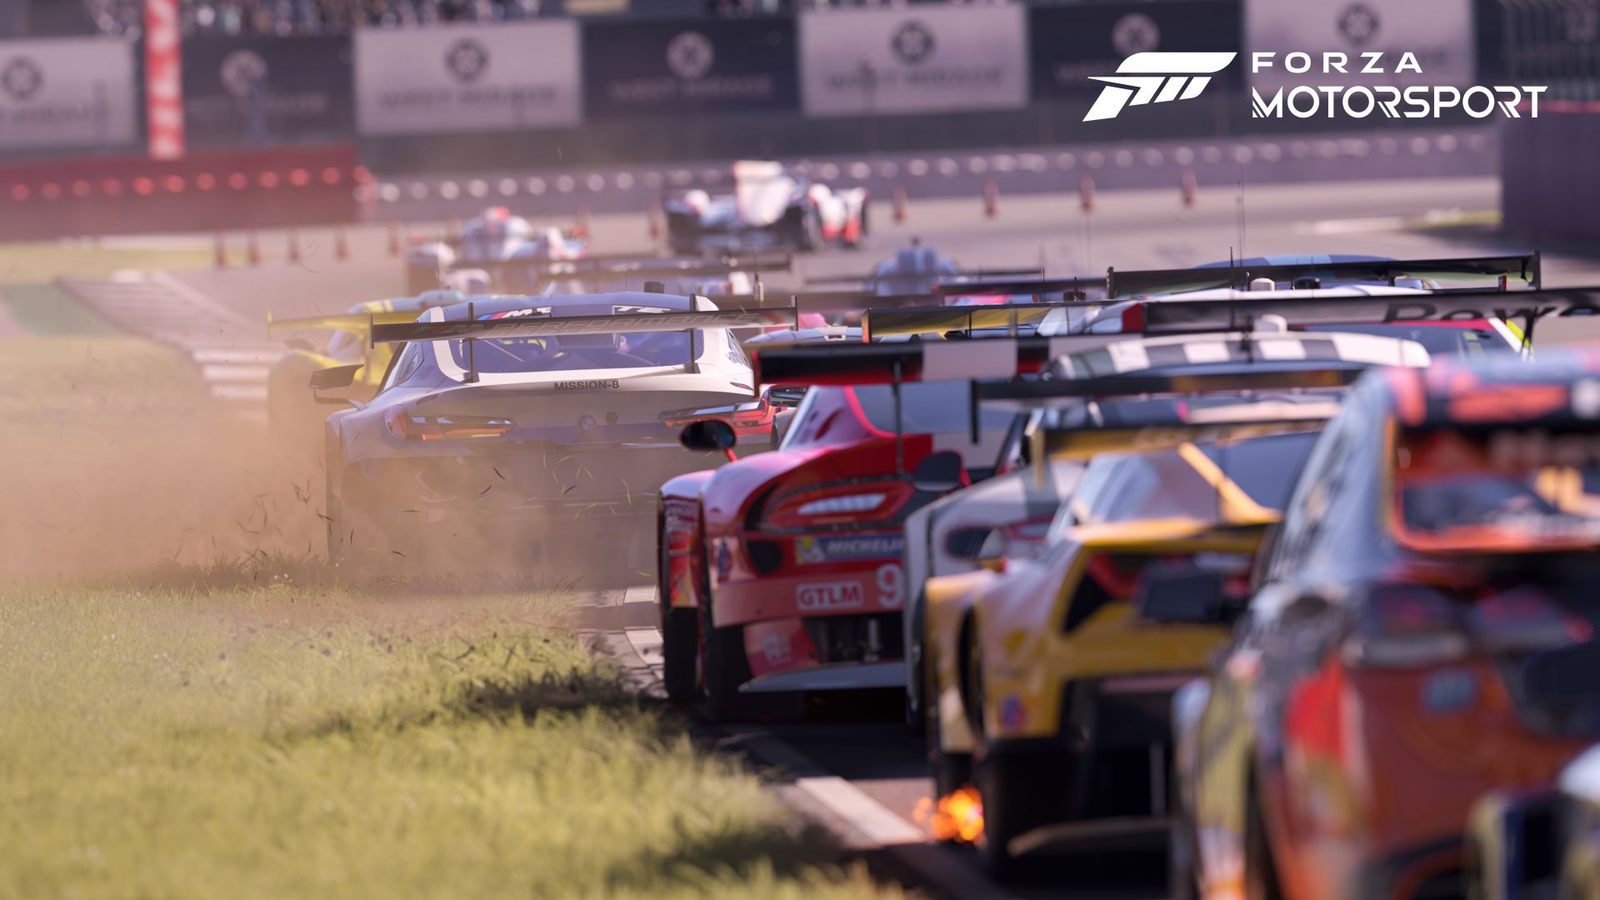 Forza Horizon 3 é lançado, mas exige hardware potente para rodar com  qualidade 